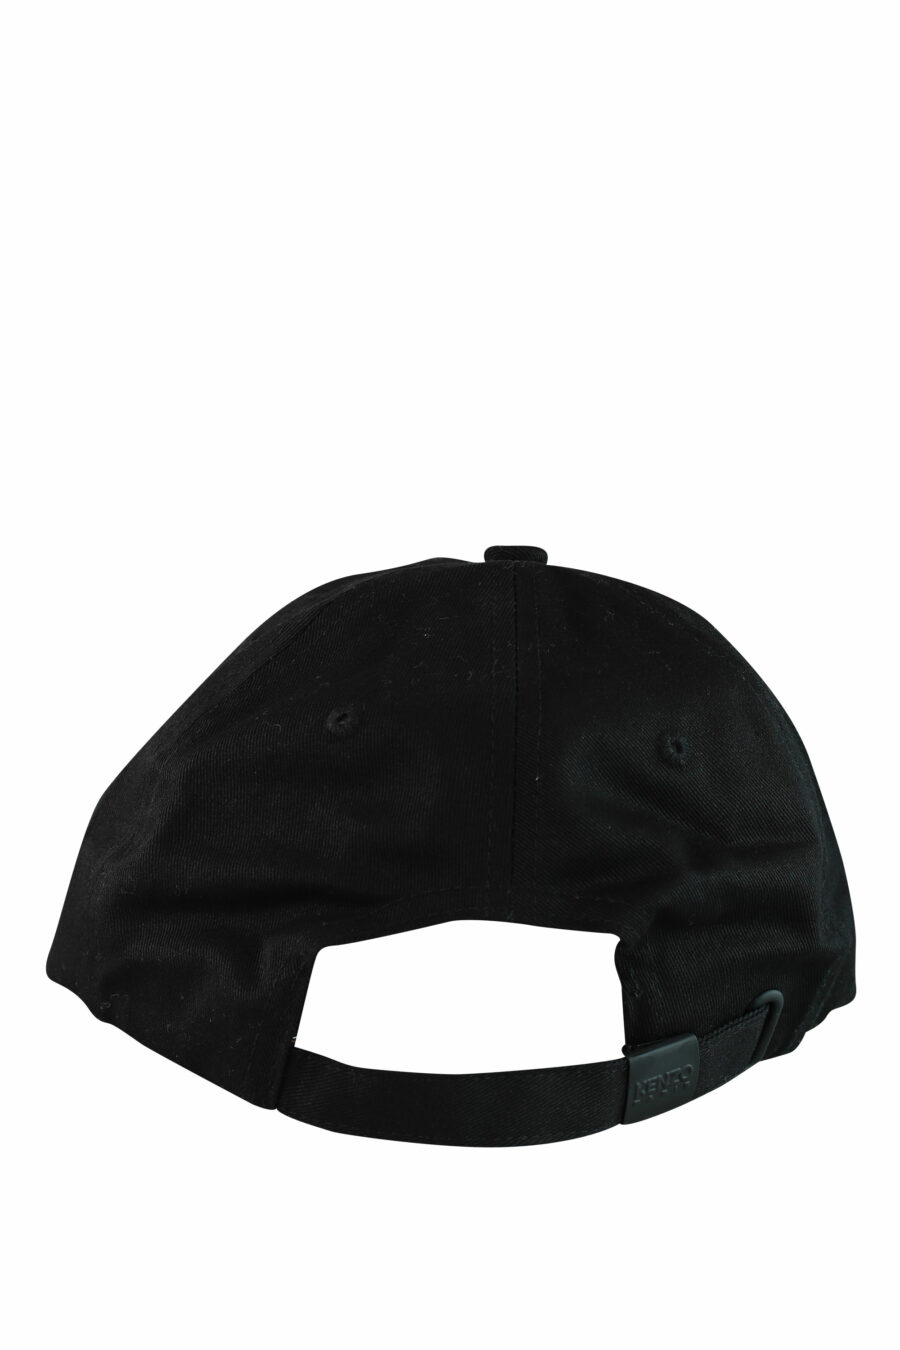 Black cap with "paris" logo - IMG 1050